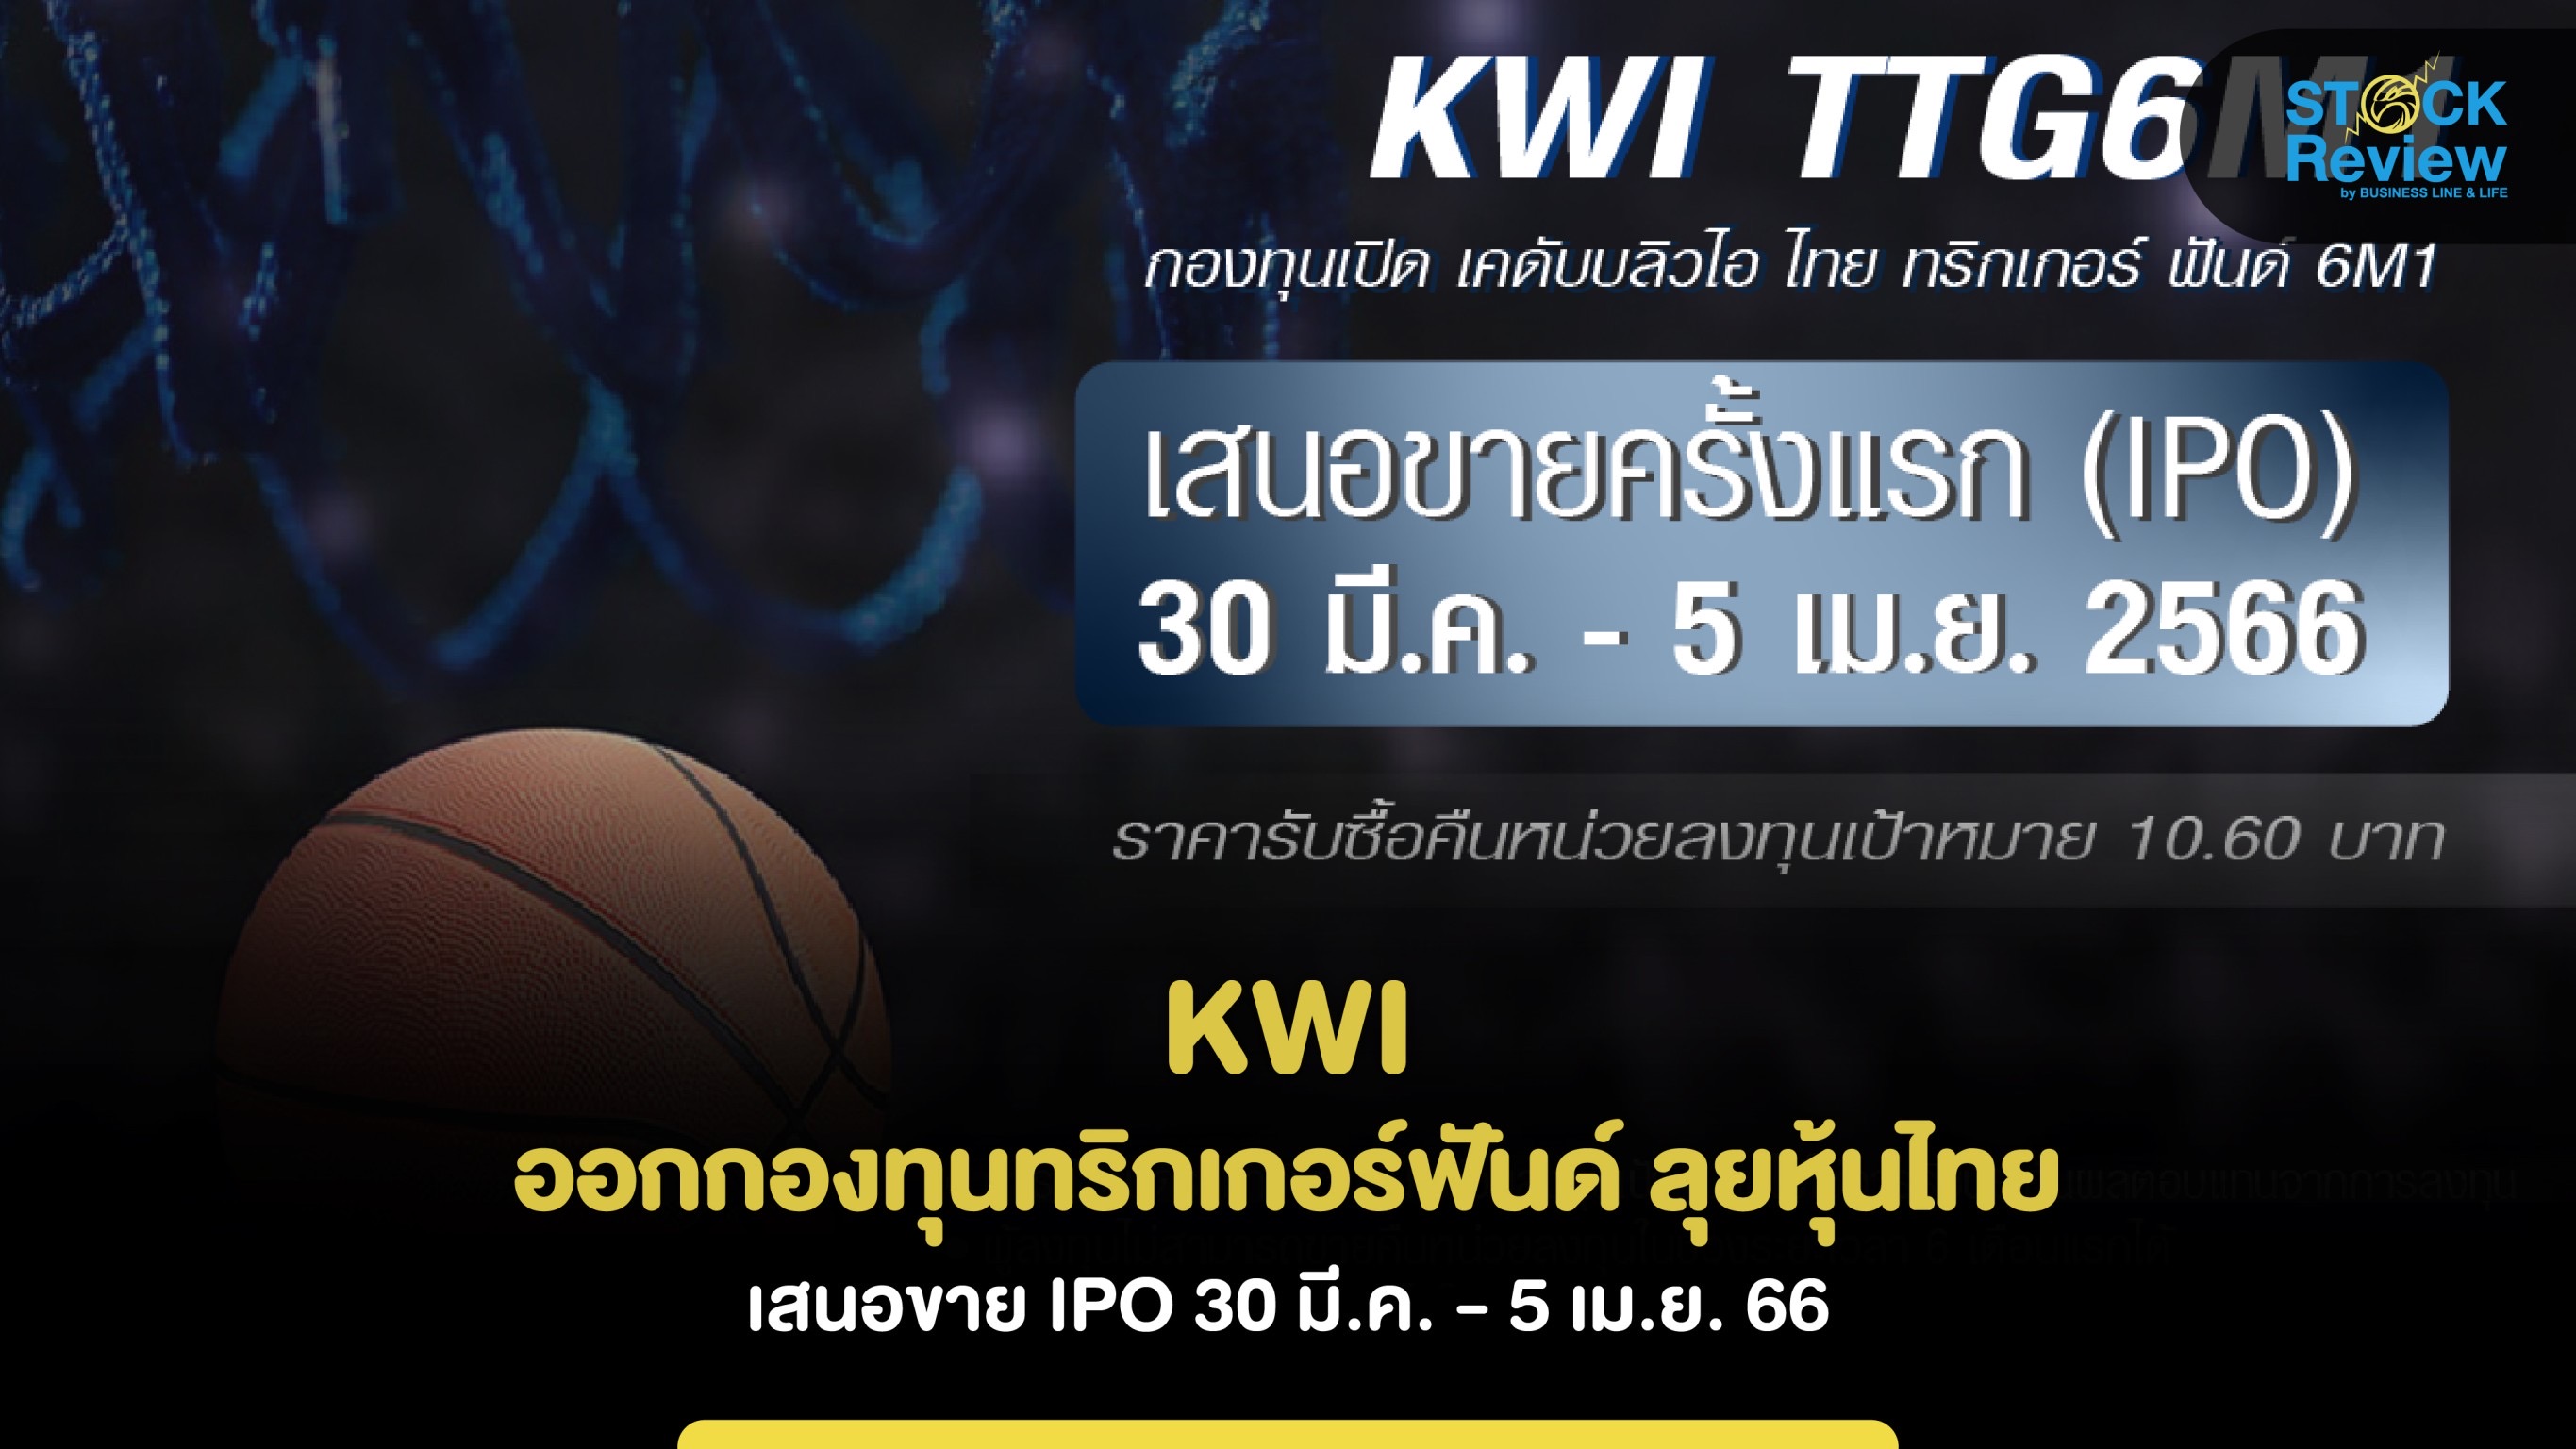 KWI ออกกองทุนทริกเกอร์ฟันด์ ลุยหุ้นไทย  เสนอขาย IPO 30 มี.ค. - 5 เม.ย. 66